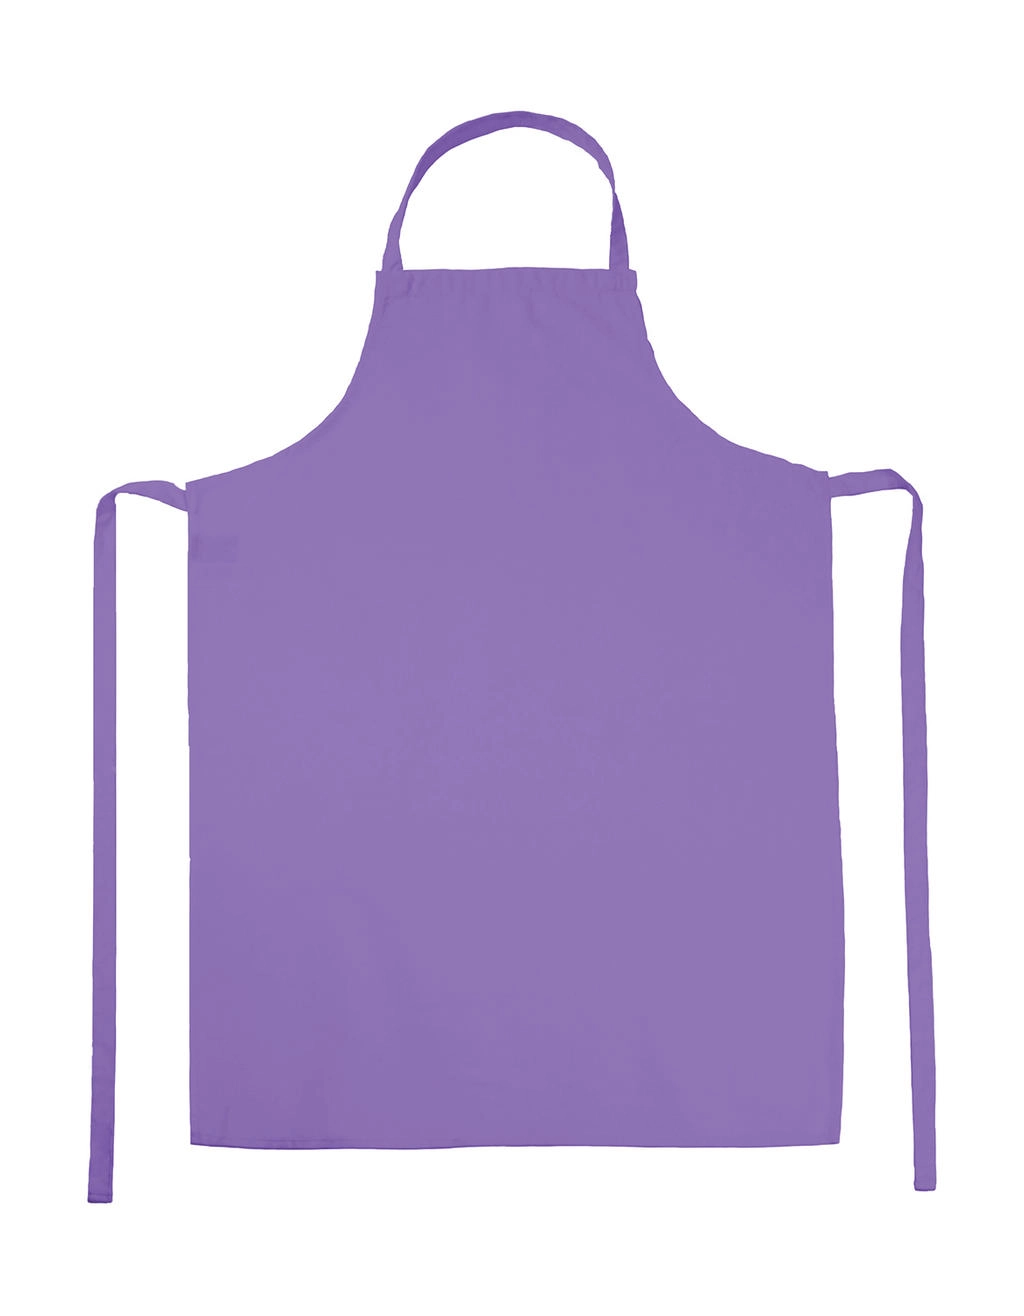 PARIS Bib Apron zum Besticken und Bedrucken in der Farbe Lavender mit Ihren Logo, Schriftzug oder Motiv.